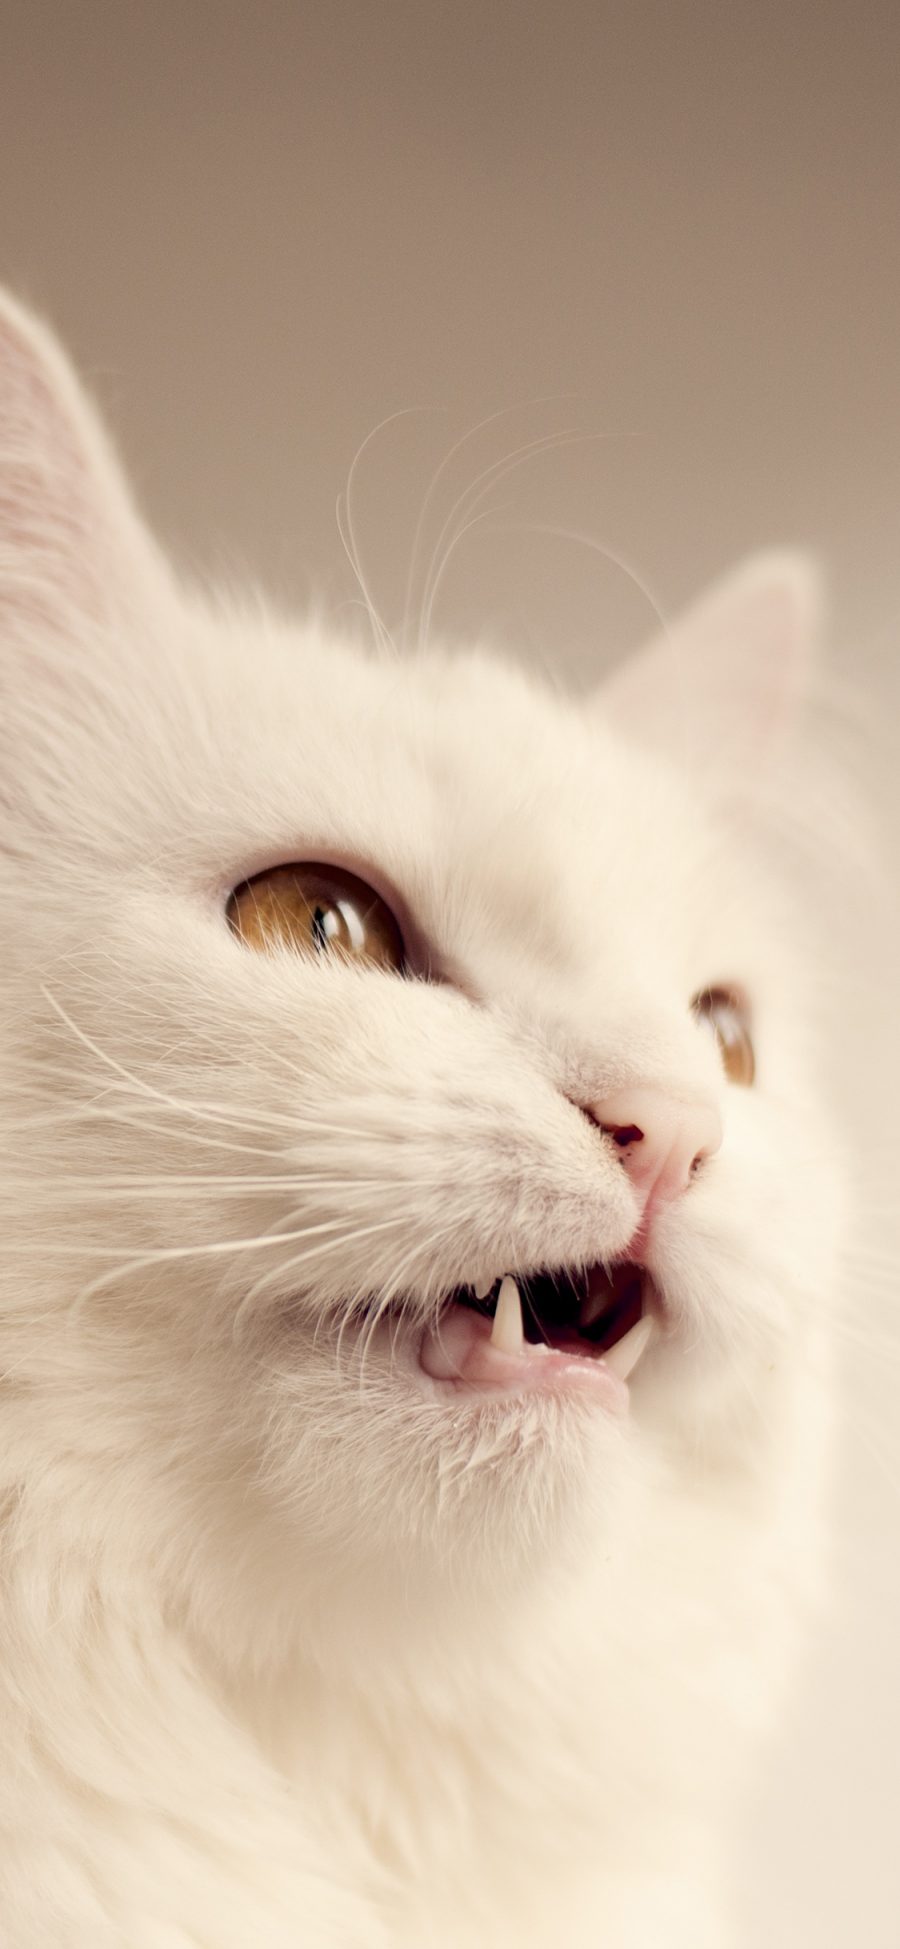 [2436×1125]猫咪 喵星人 白猫 可爱 宠物 苹果手机壁纸图片